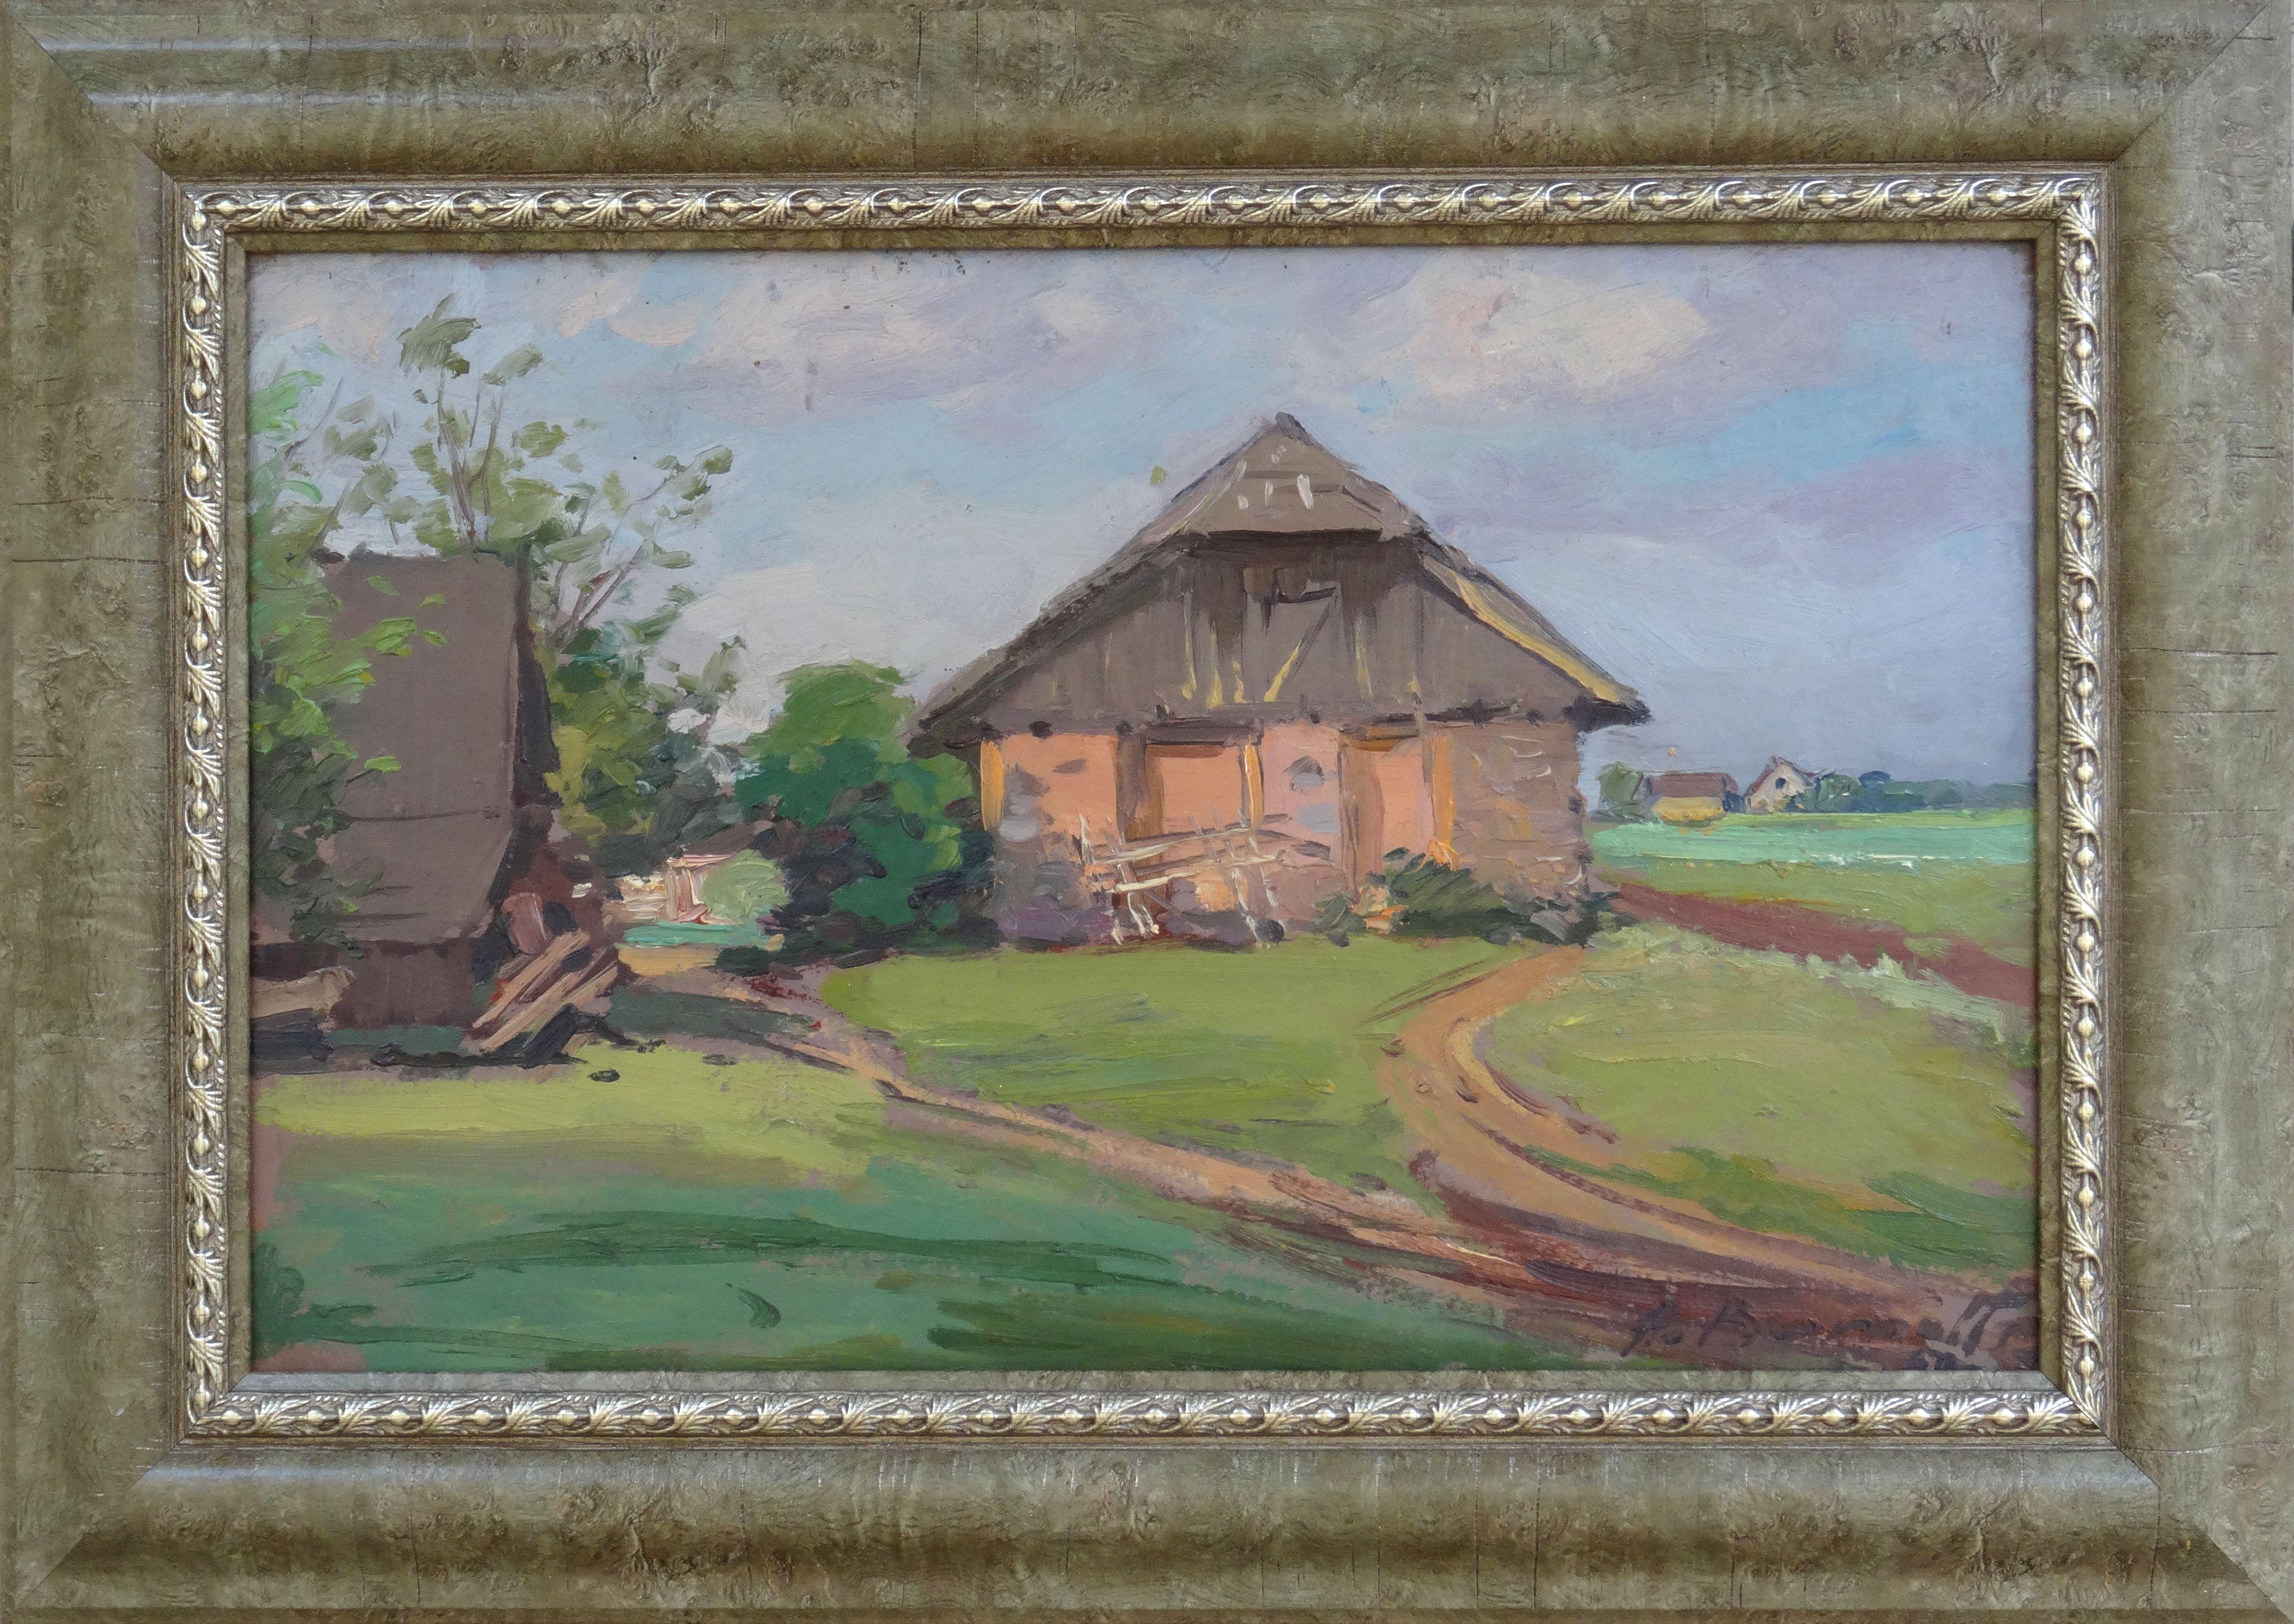 vie rurale. 1970, carton, huile, 23,5x36,5 cm - Painting de Alfejs Bromults